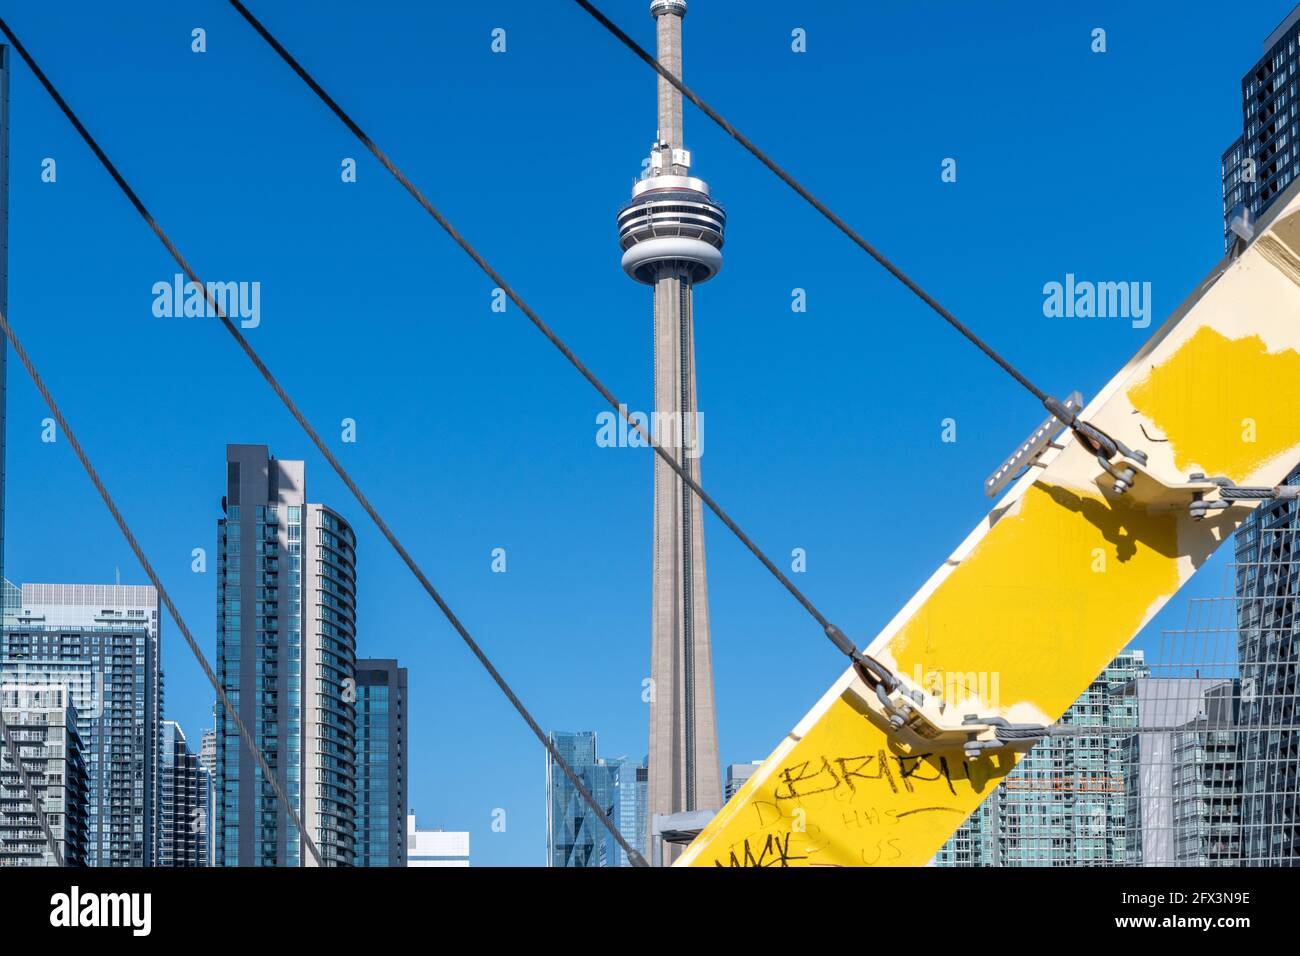 La CN Tower in una bella giornata cielo blu a Toronto, Canada. Il simbolo canadese è incorniciato dal ponte pedonale CityPlace. Foto Stock